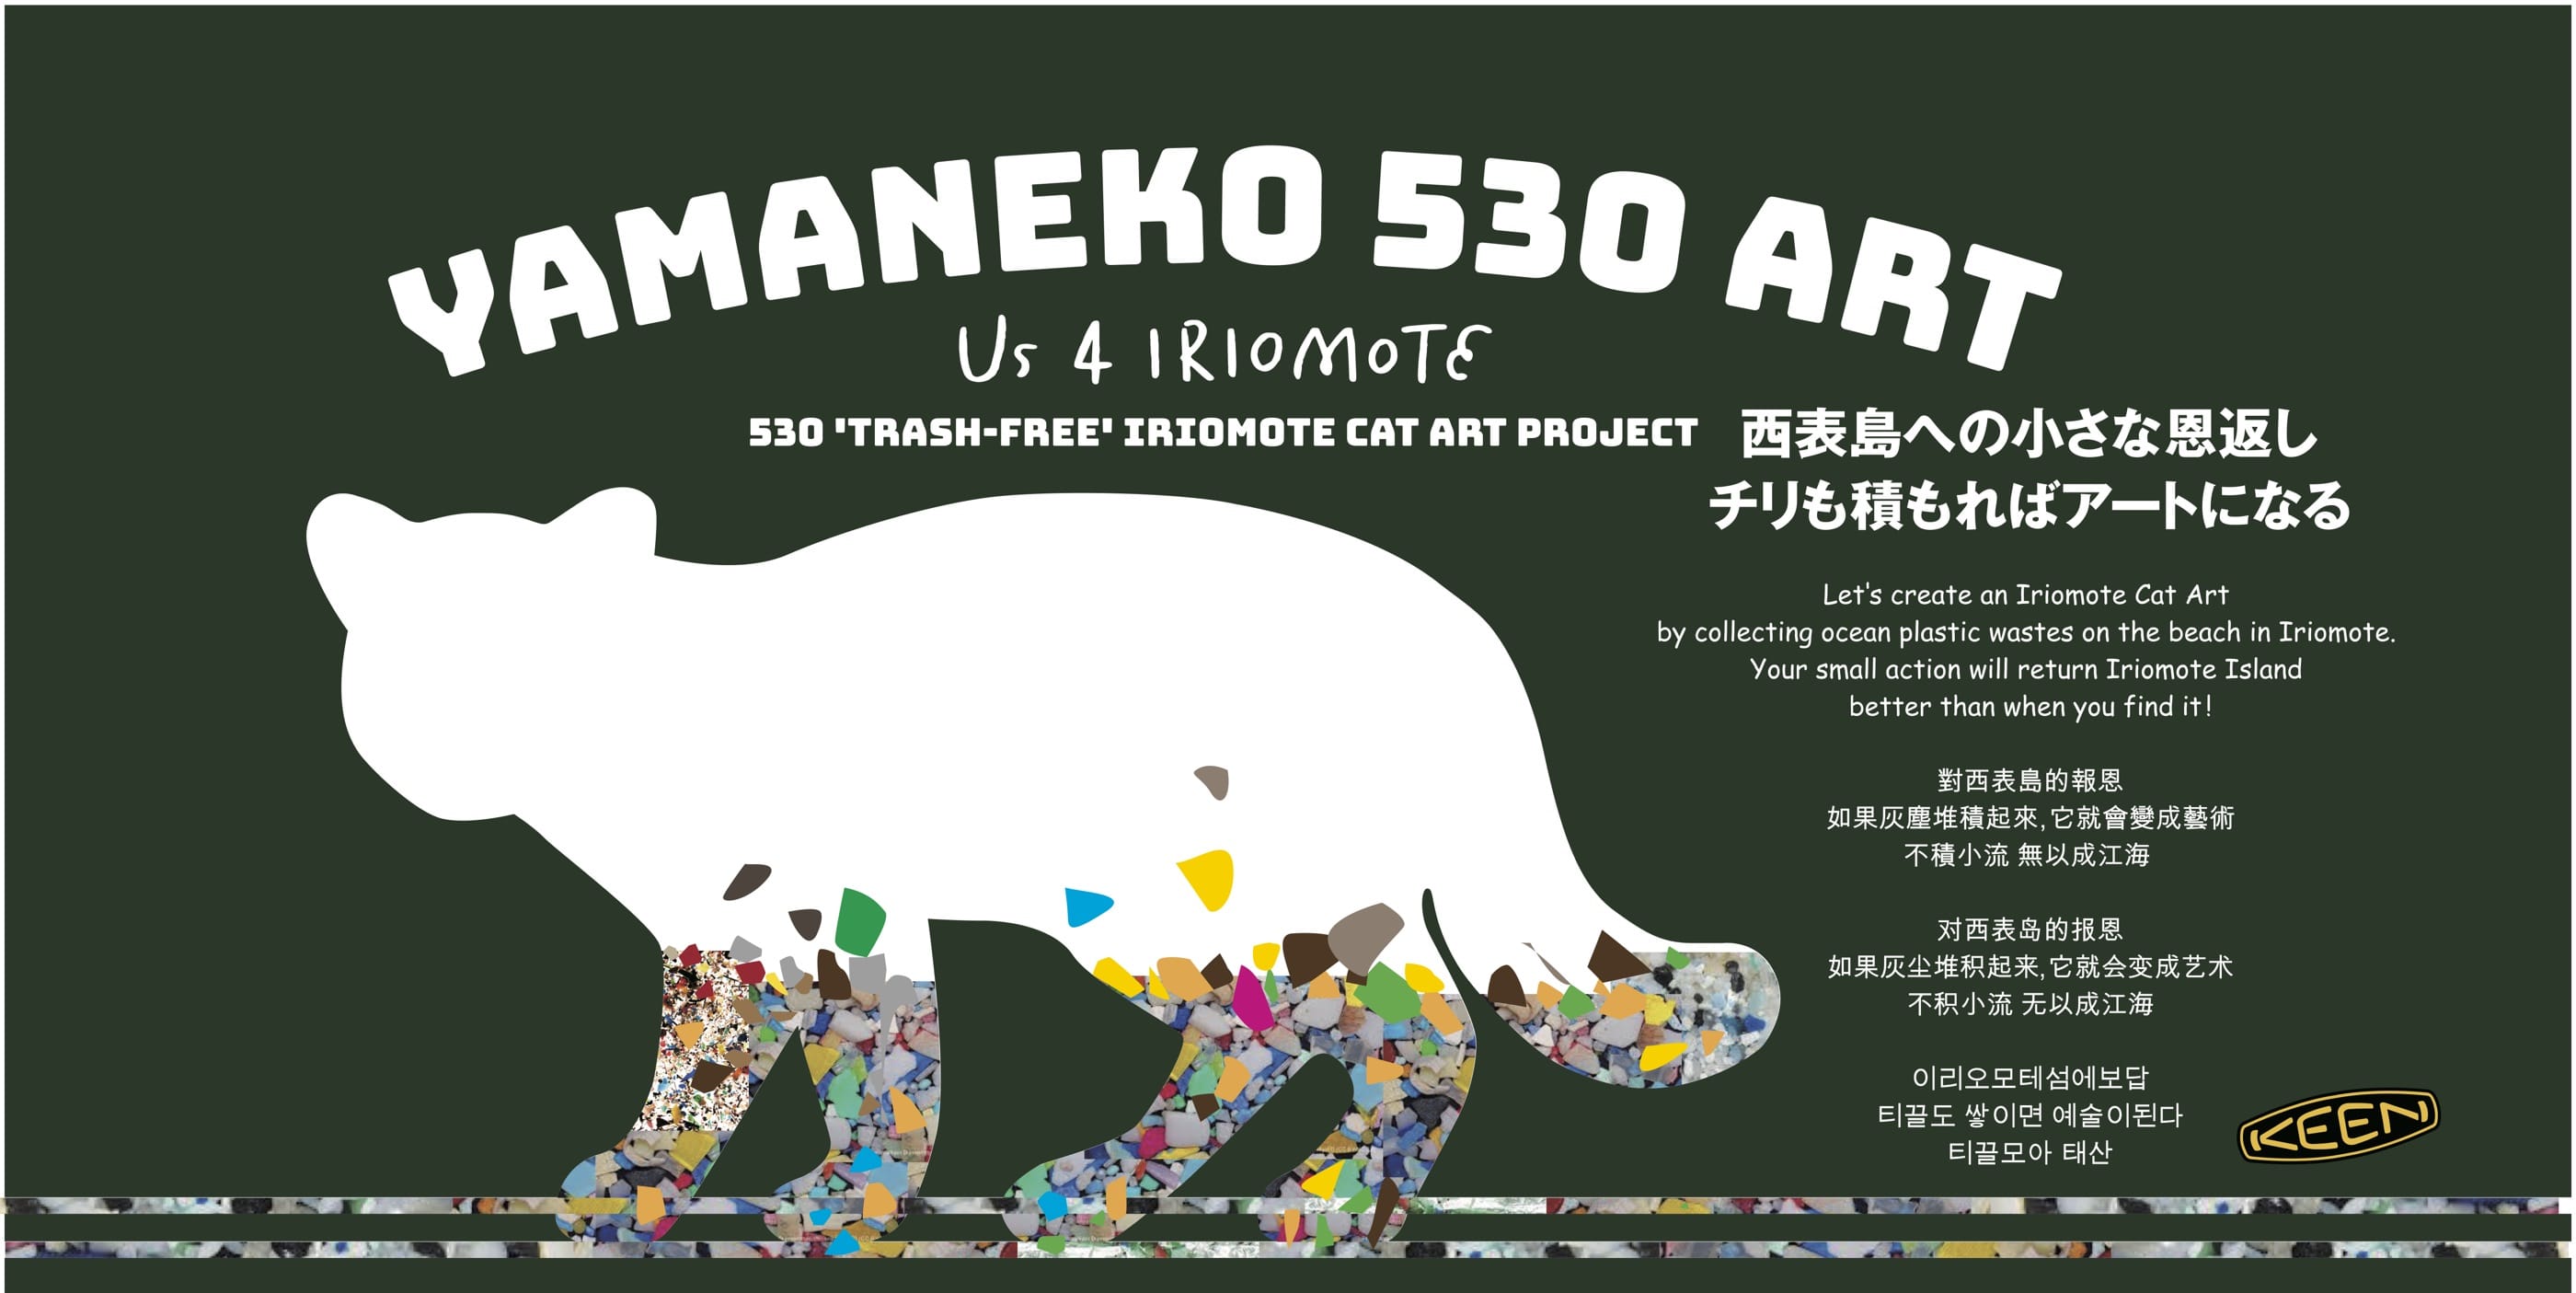 ヤマネコ530（ゴミゼロ）アートプロジェクト